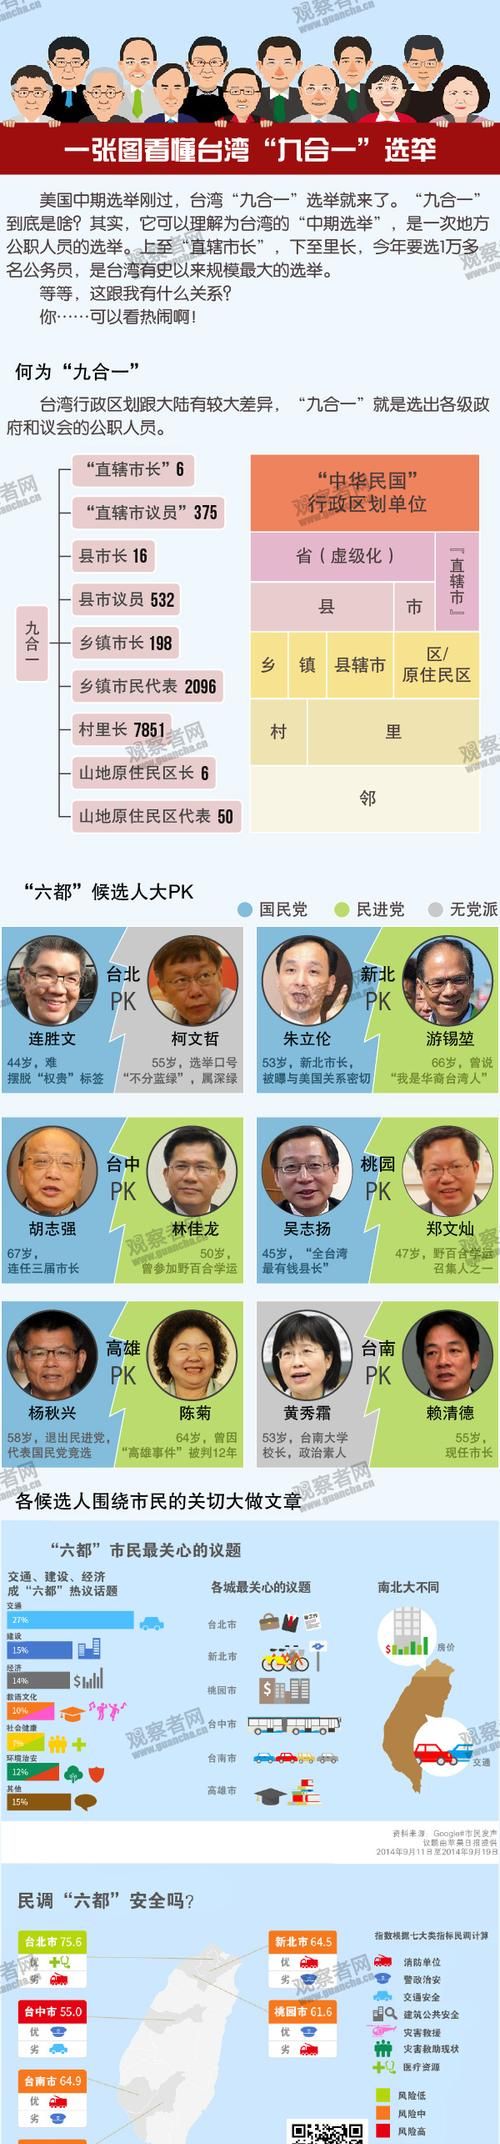 台湾九合一选举是什么意思